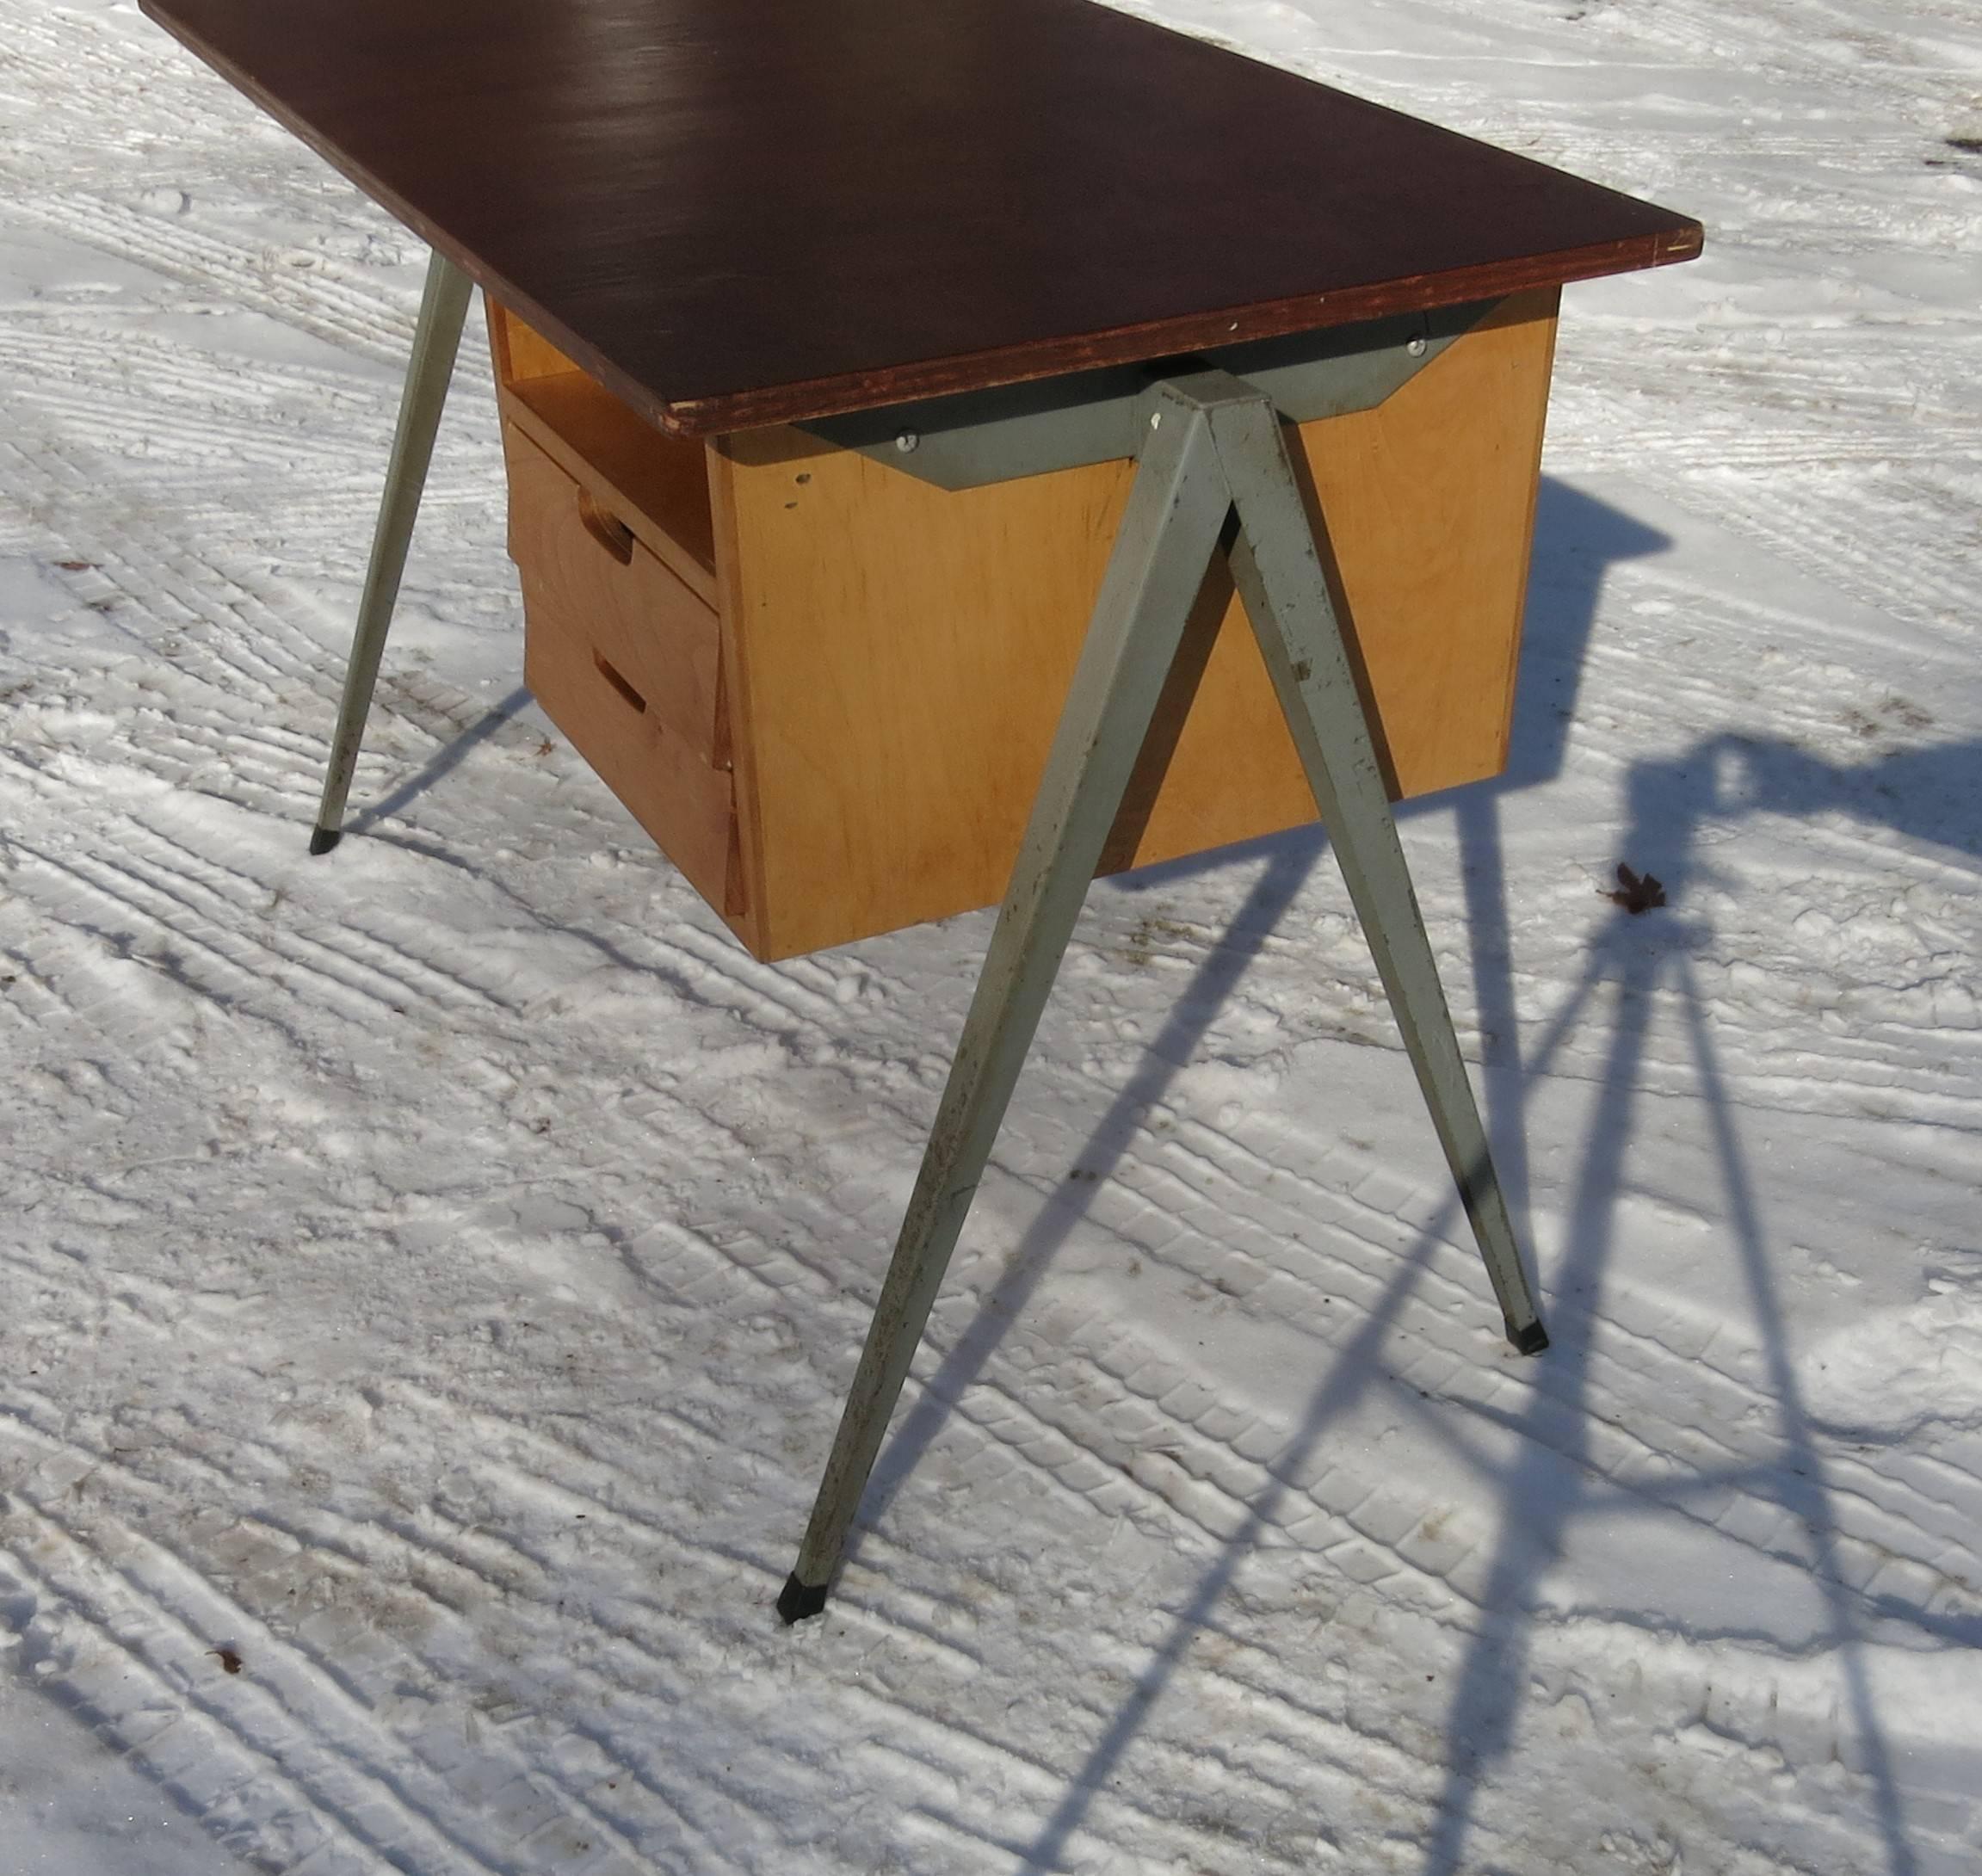 Minimalist Vintage 1950s Marko Desk, Netherlands Industrial Desk